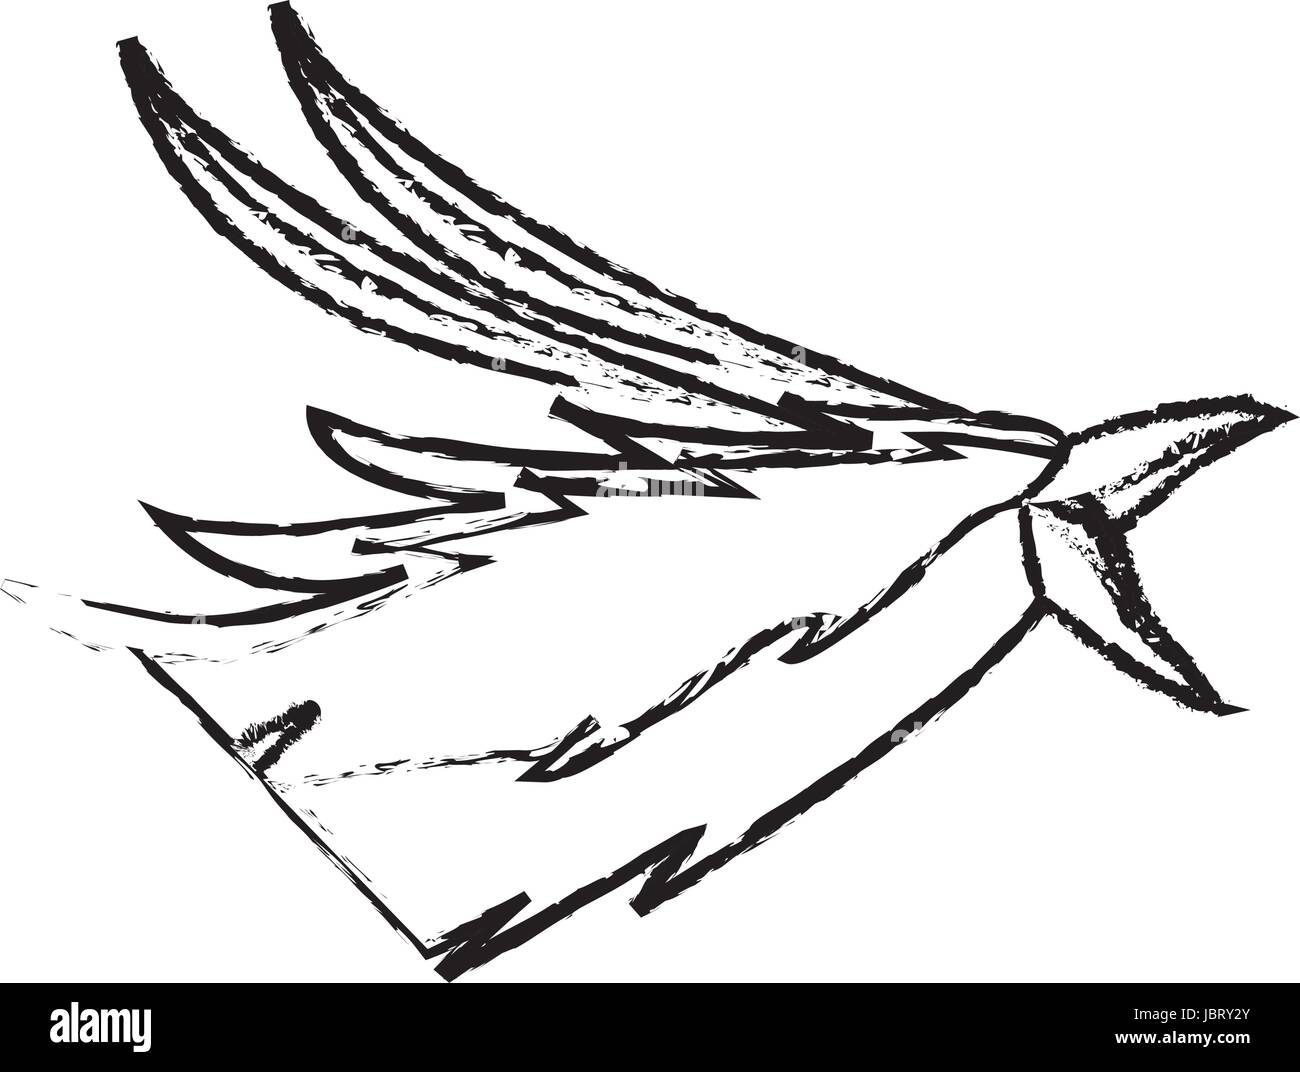 La tête de phoenix bird image magic mythologique Illustration de Vecteur